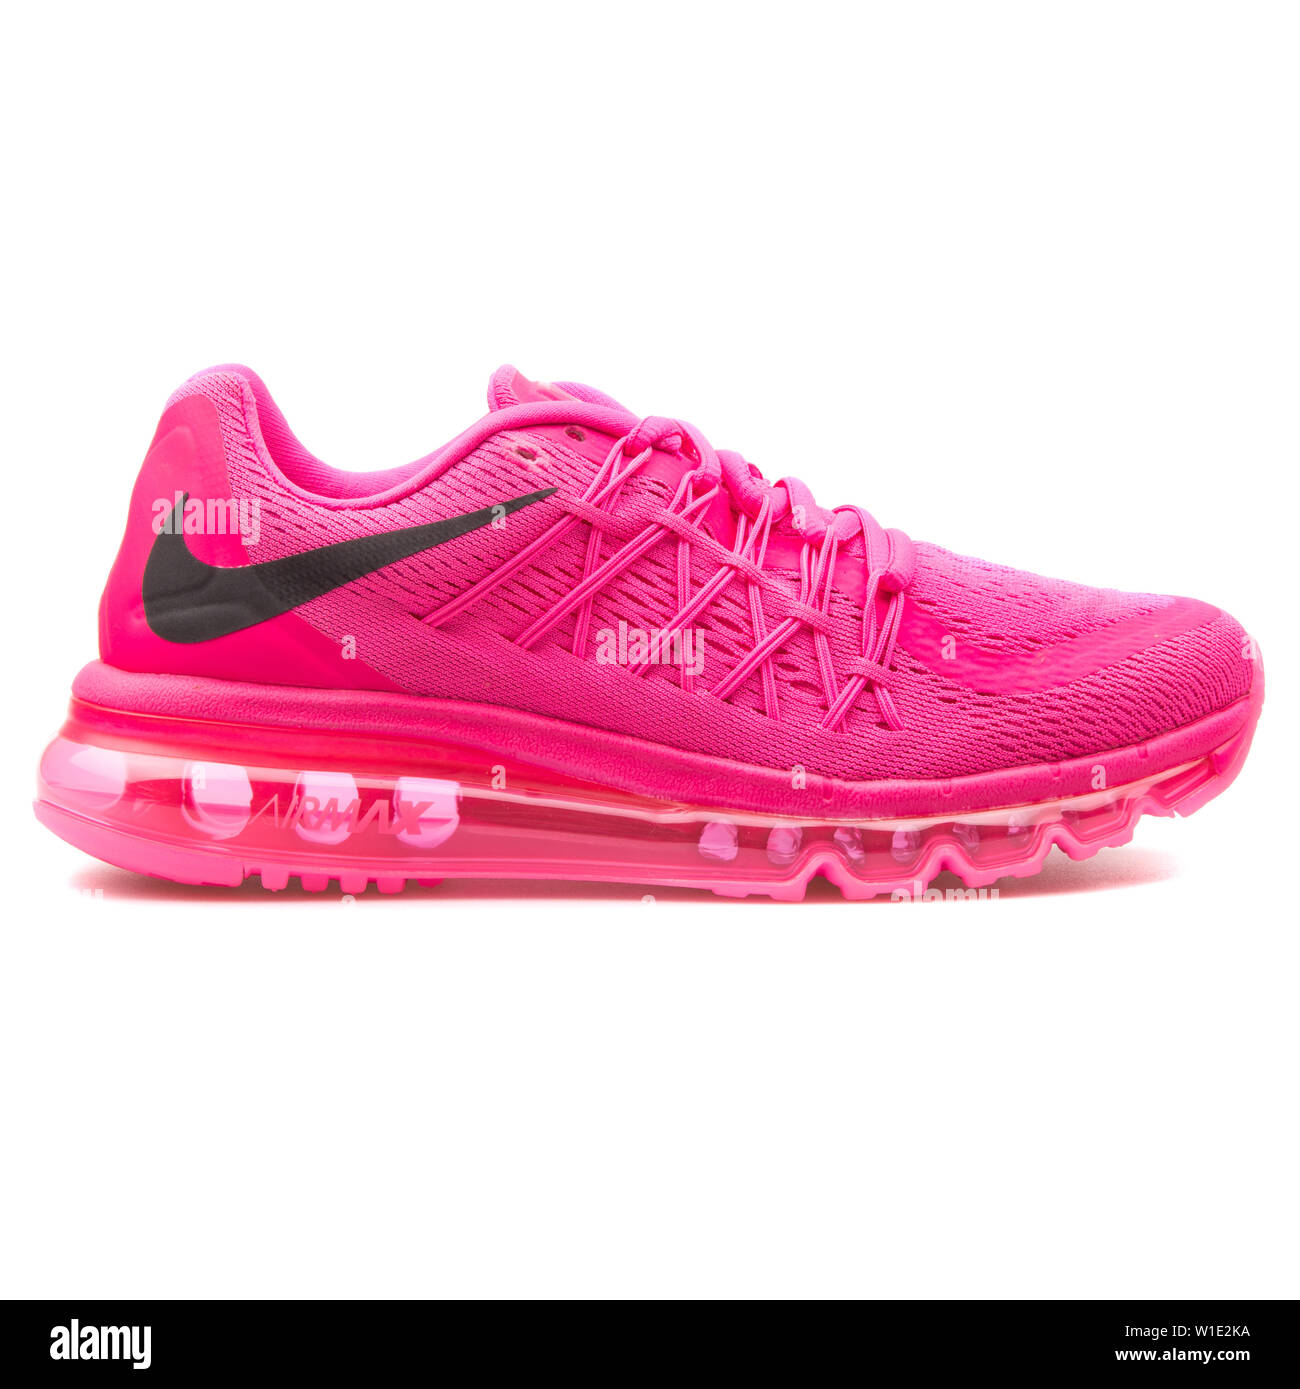 womens air max 2015 pink